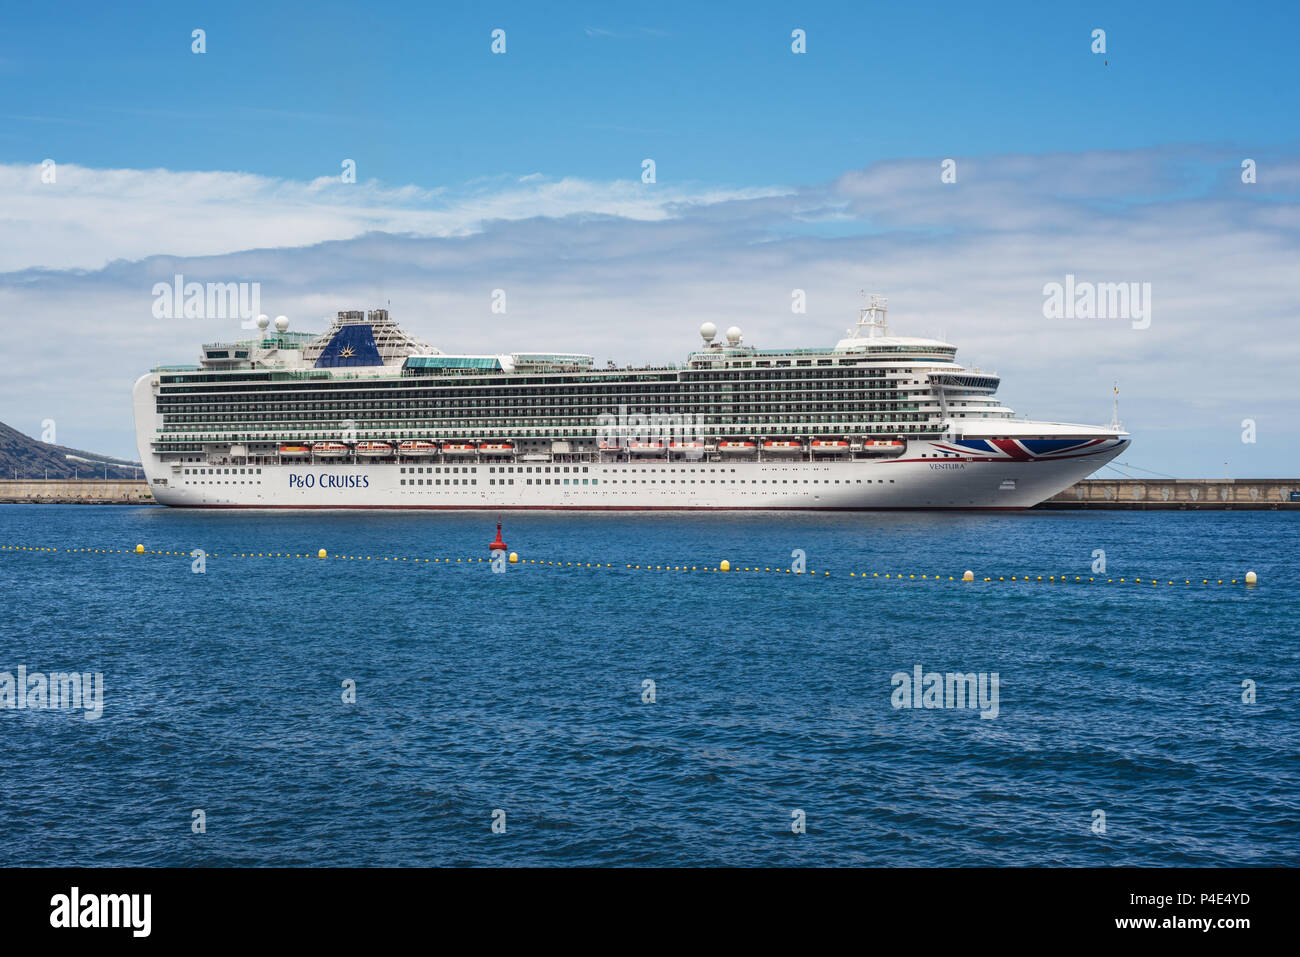 Santa Cruz de la Palma, Spain - May 31, 2018: The luxury cruise “ventura” of P & O Cruises company docked in La Palma Port, Canary islands, Spain. Stock Photo